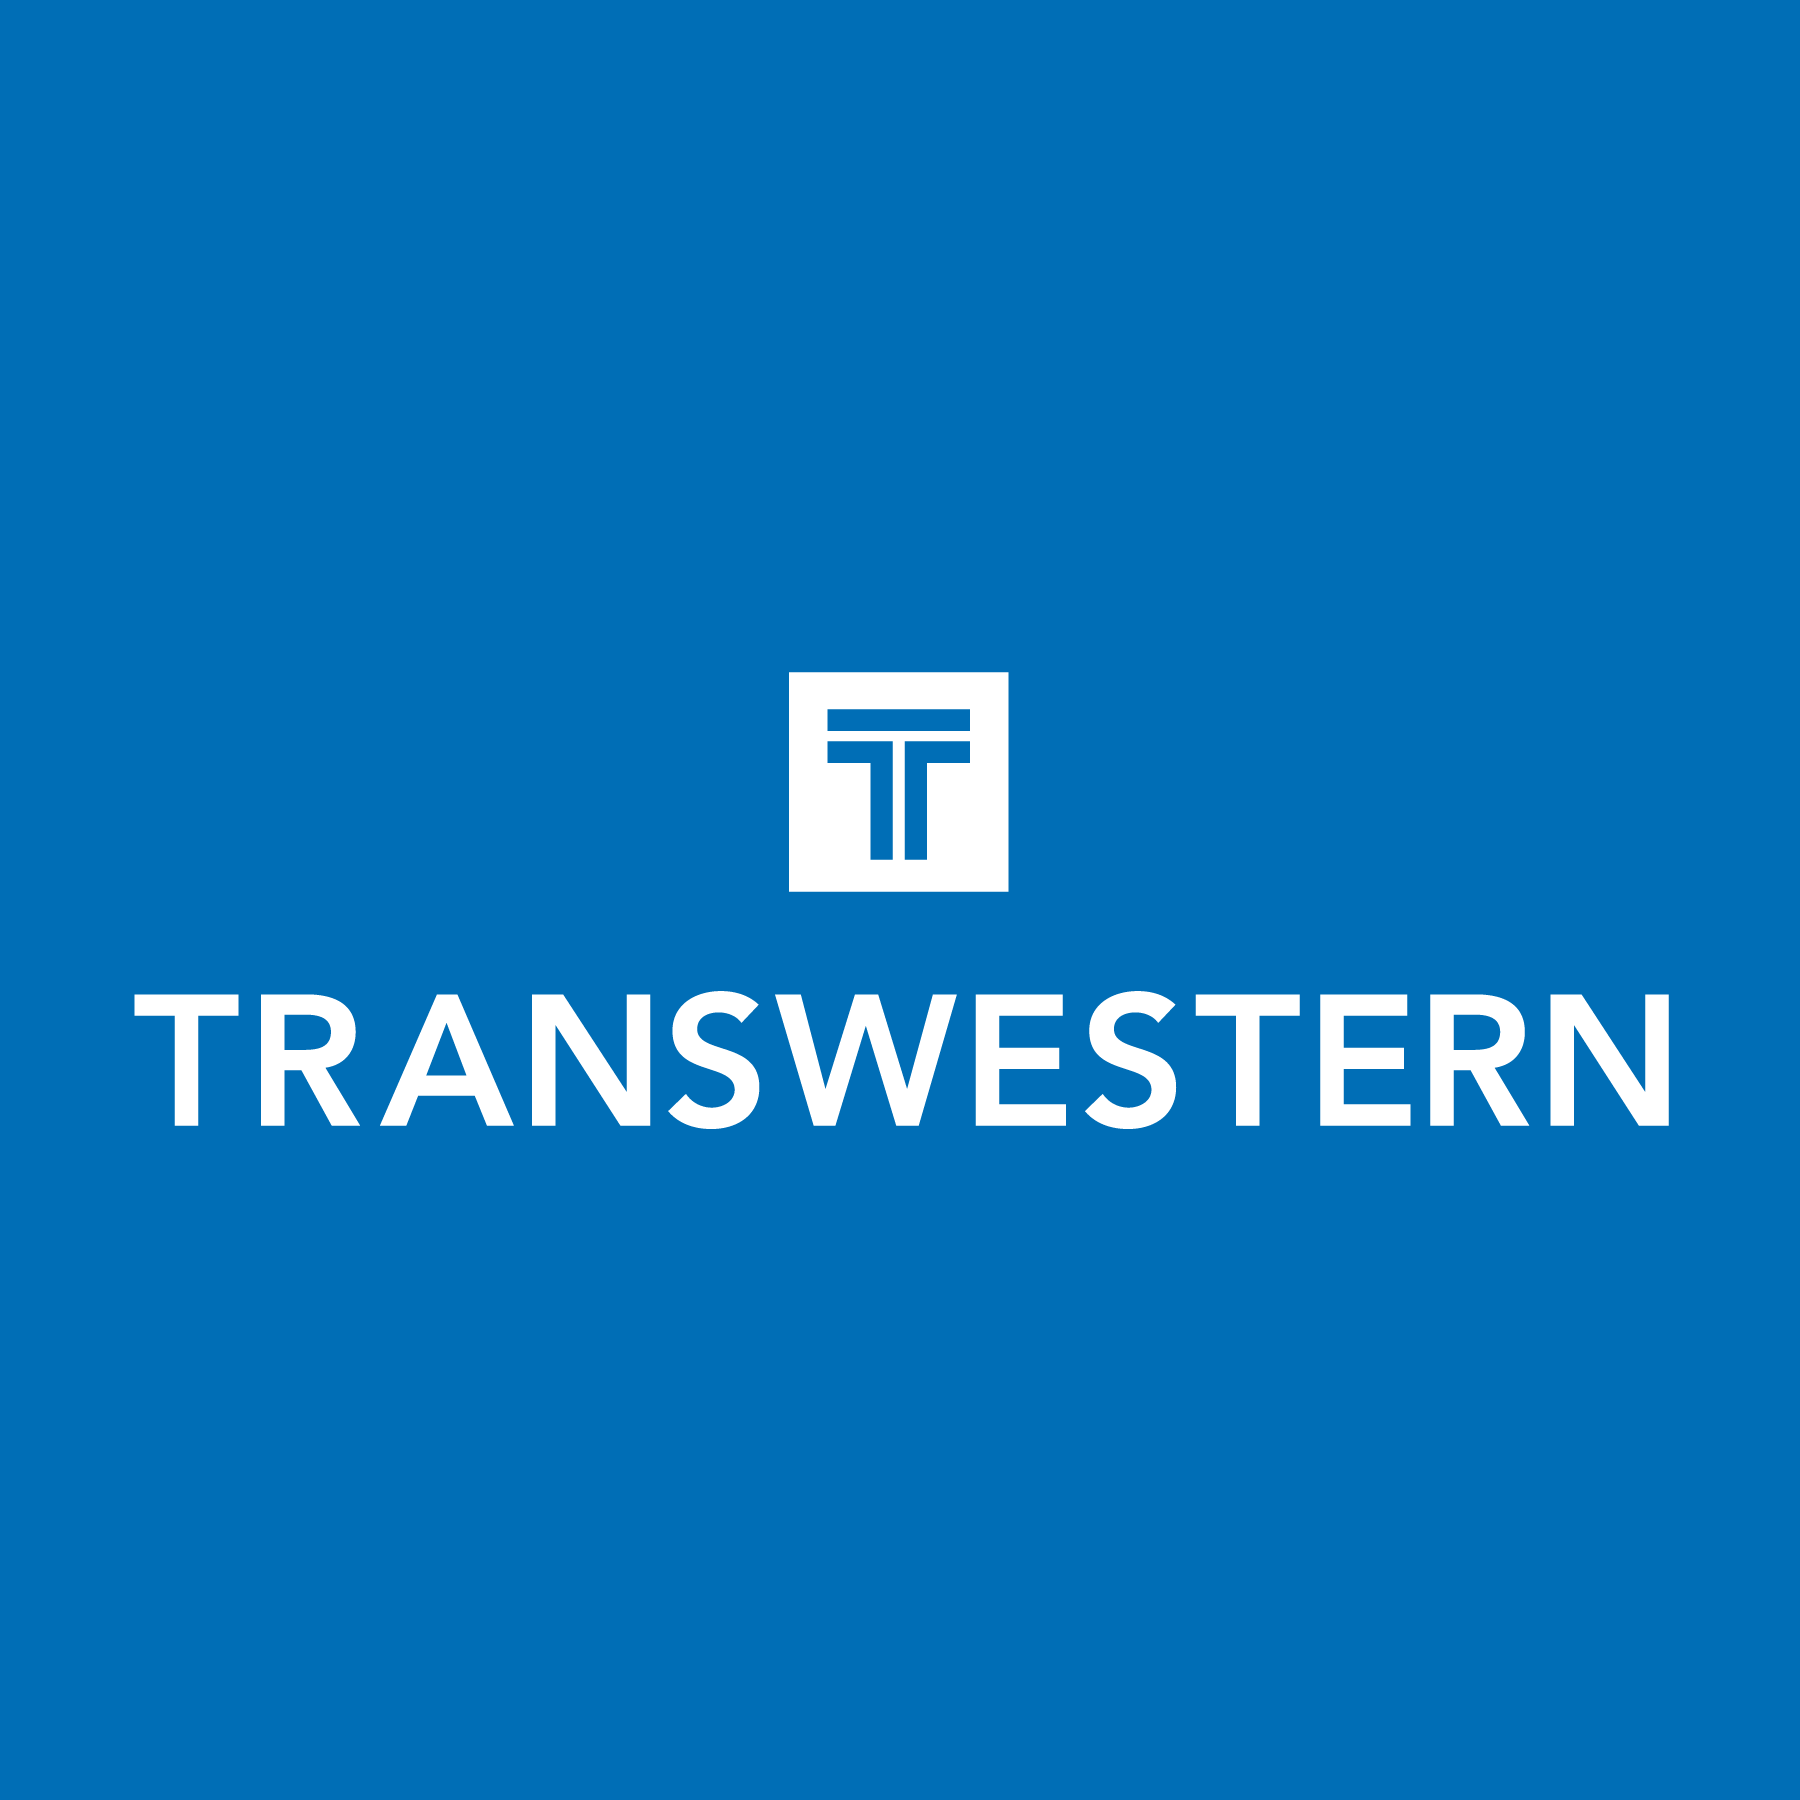 Transwestern logo